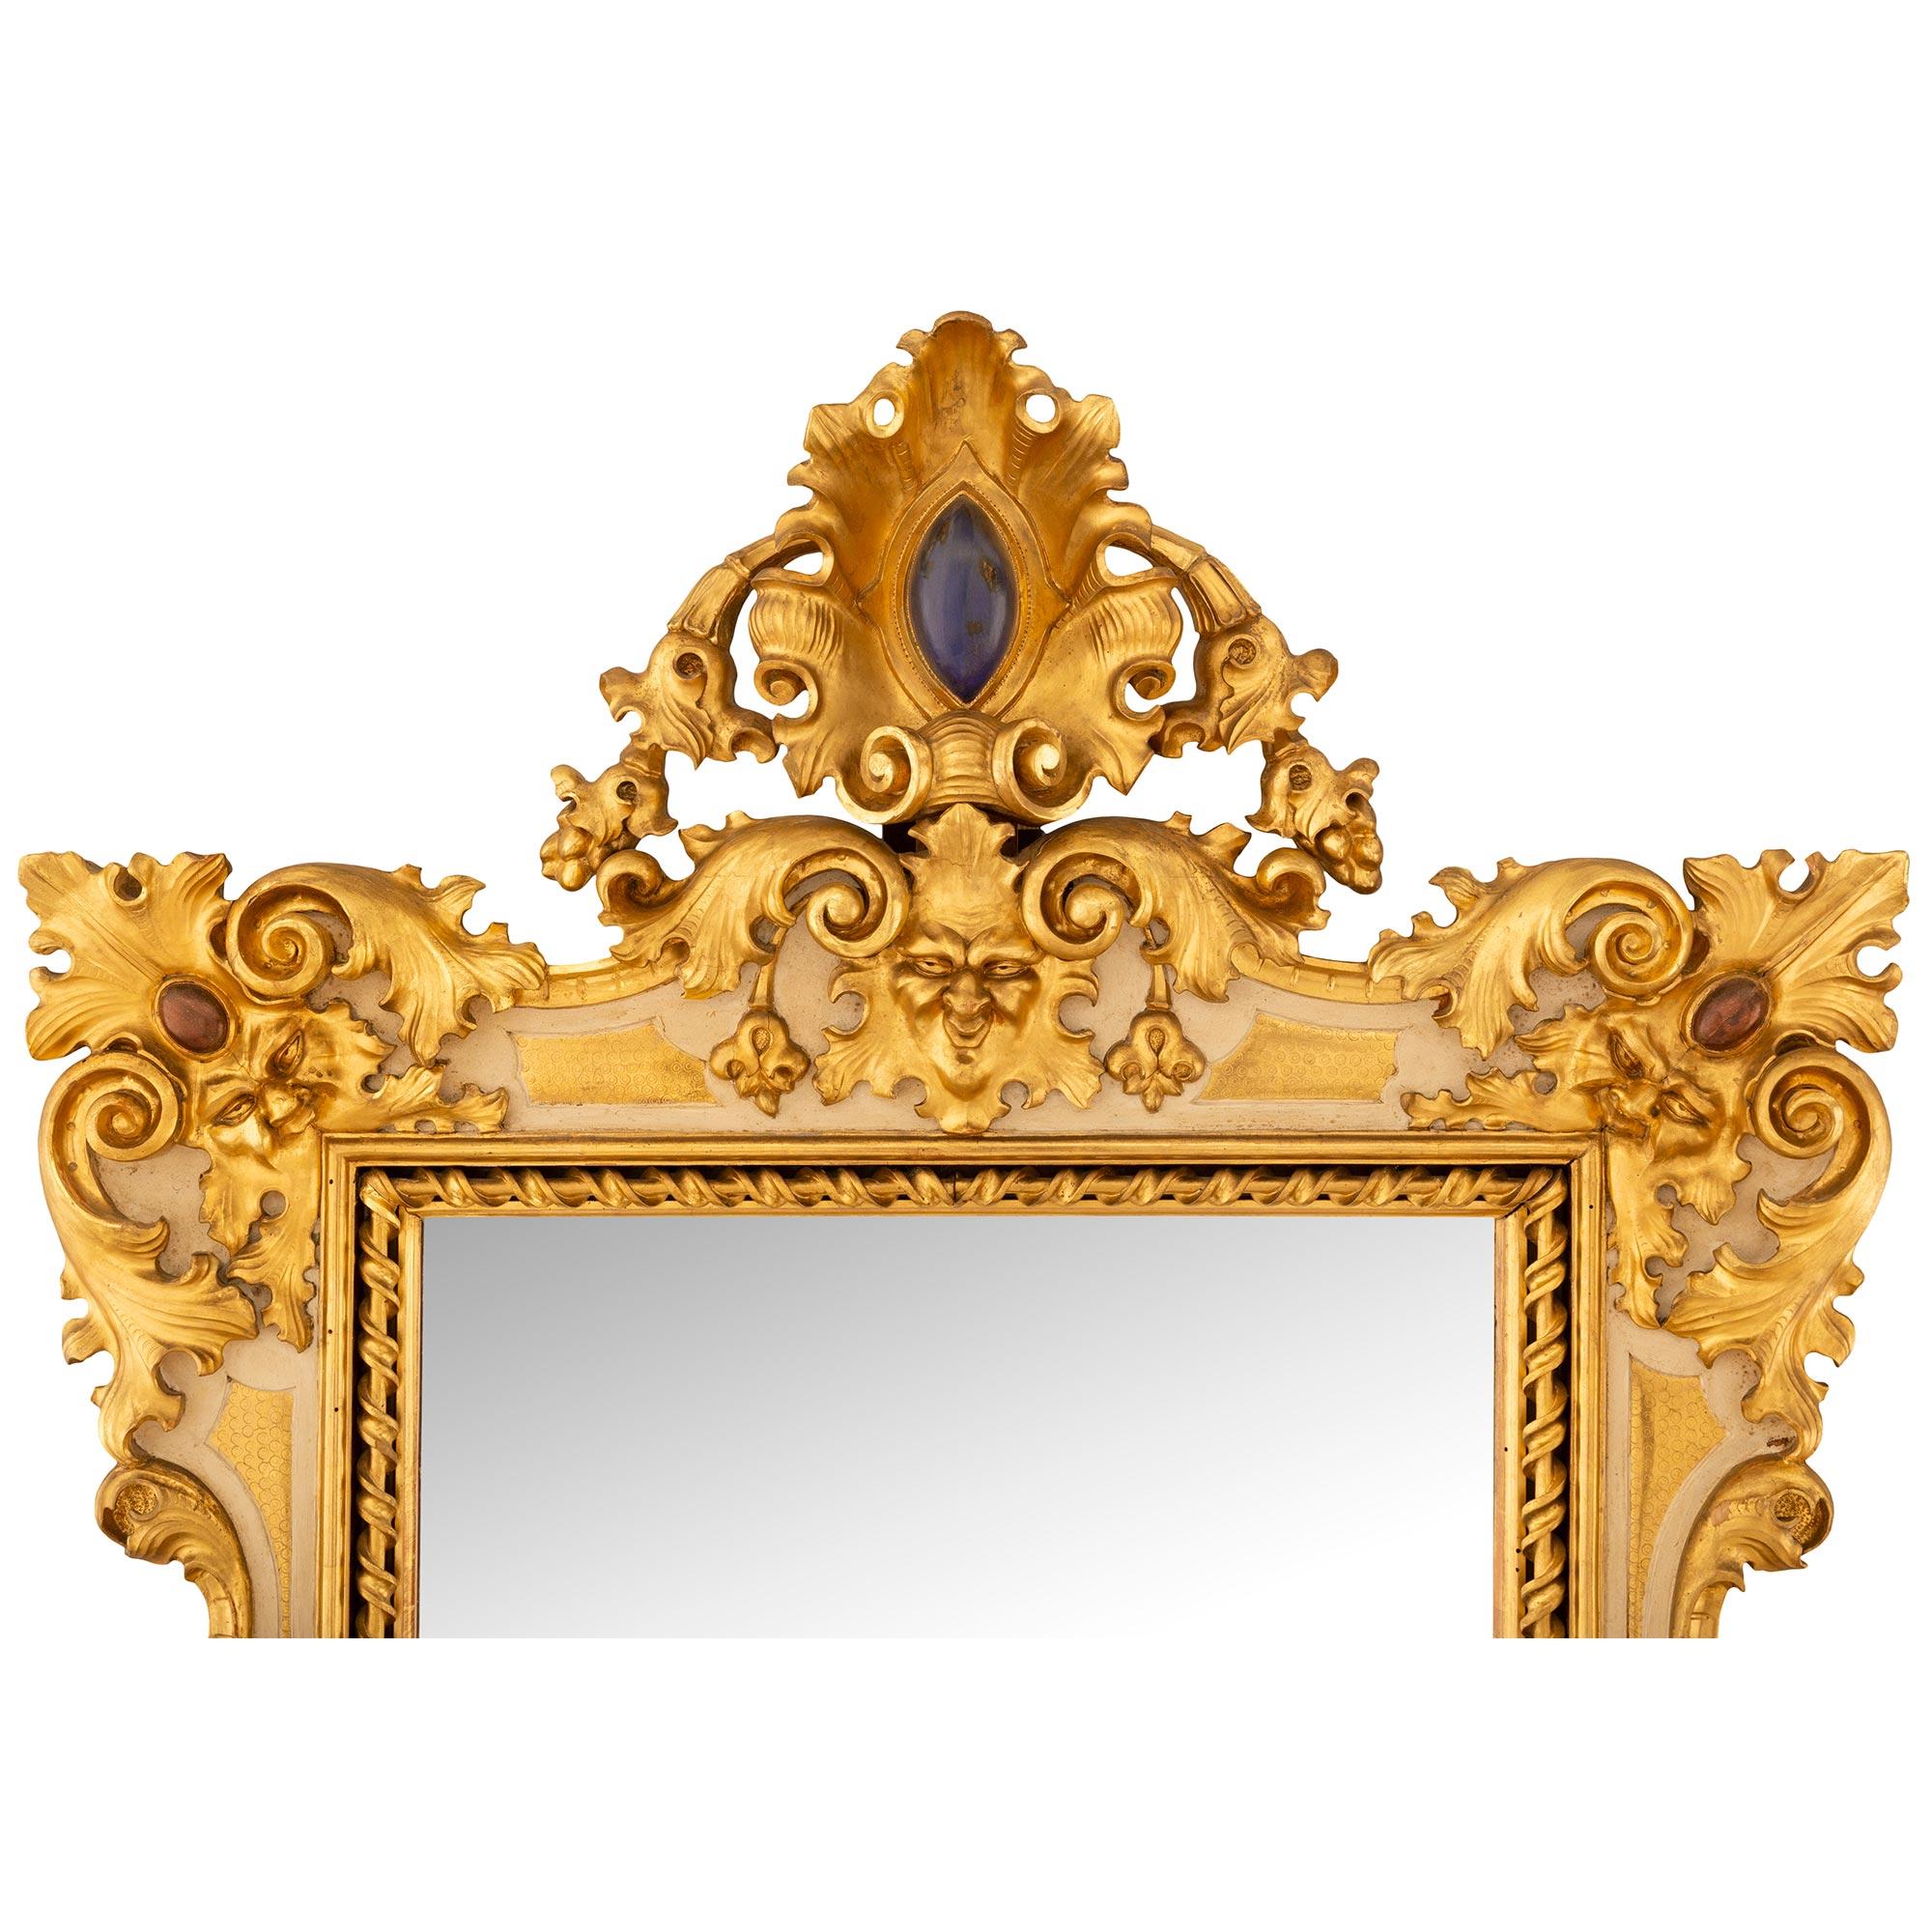 Miroir baroque italien du 19ème siècle en bois patiné et bois doré, unique et très décoratif. Le miroir repose sur de magnifiques pieds marbrés, sous des mouvements en volute reliés par un beau bandeau en bois doré. Ce superbe miroir présente une